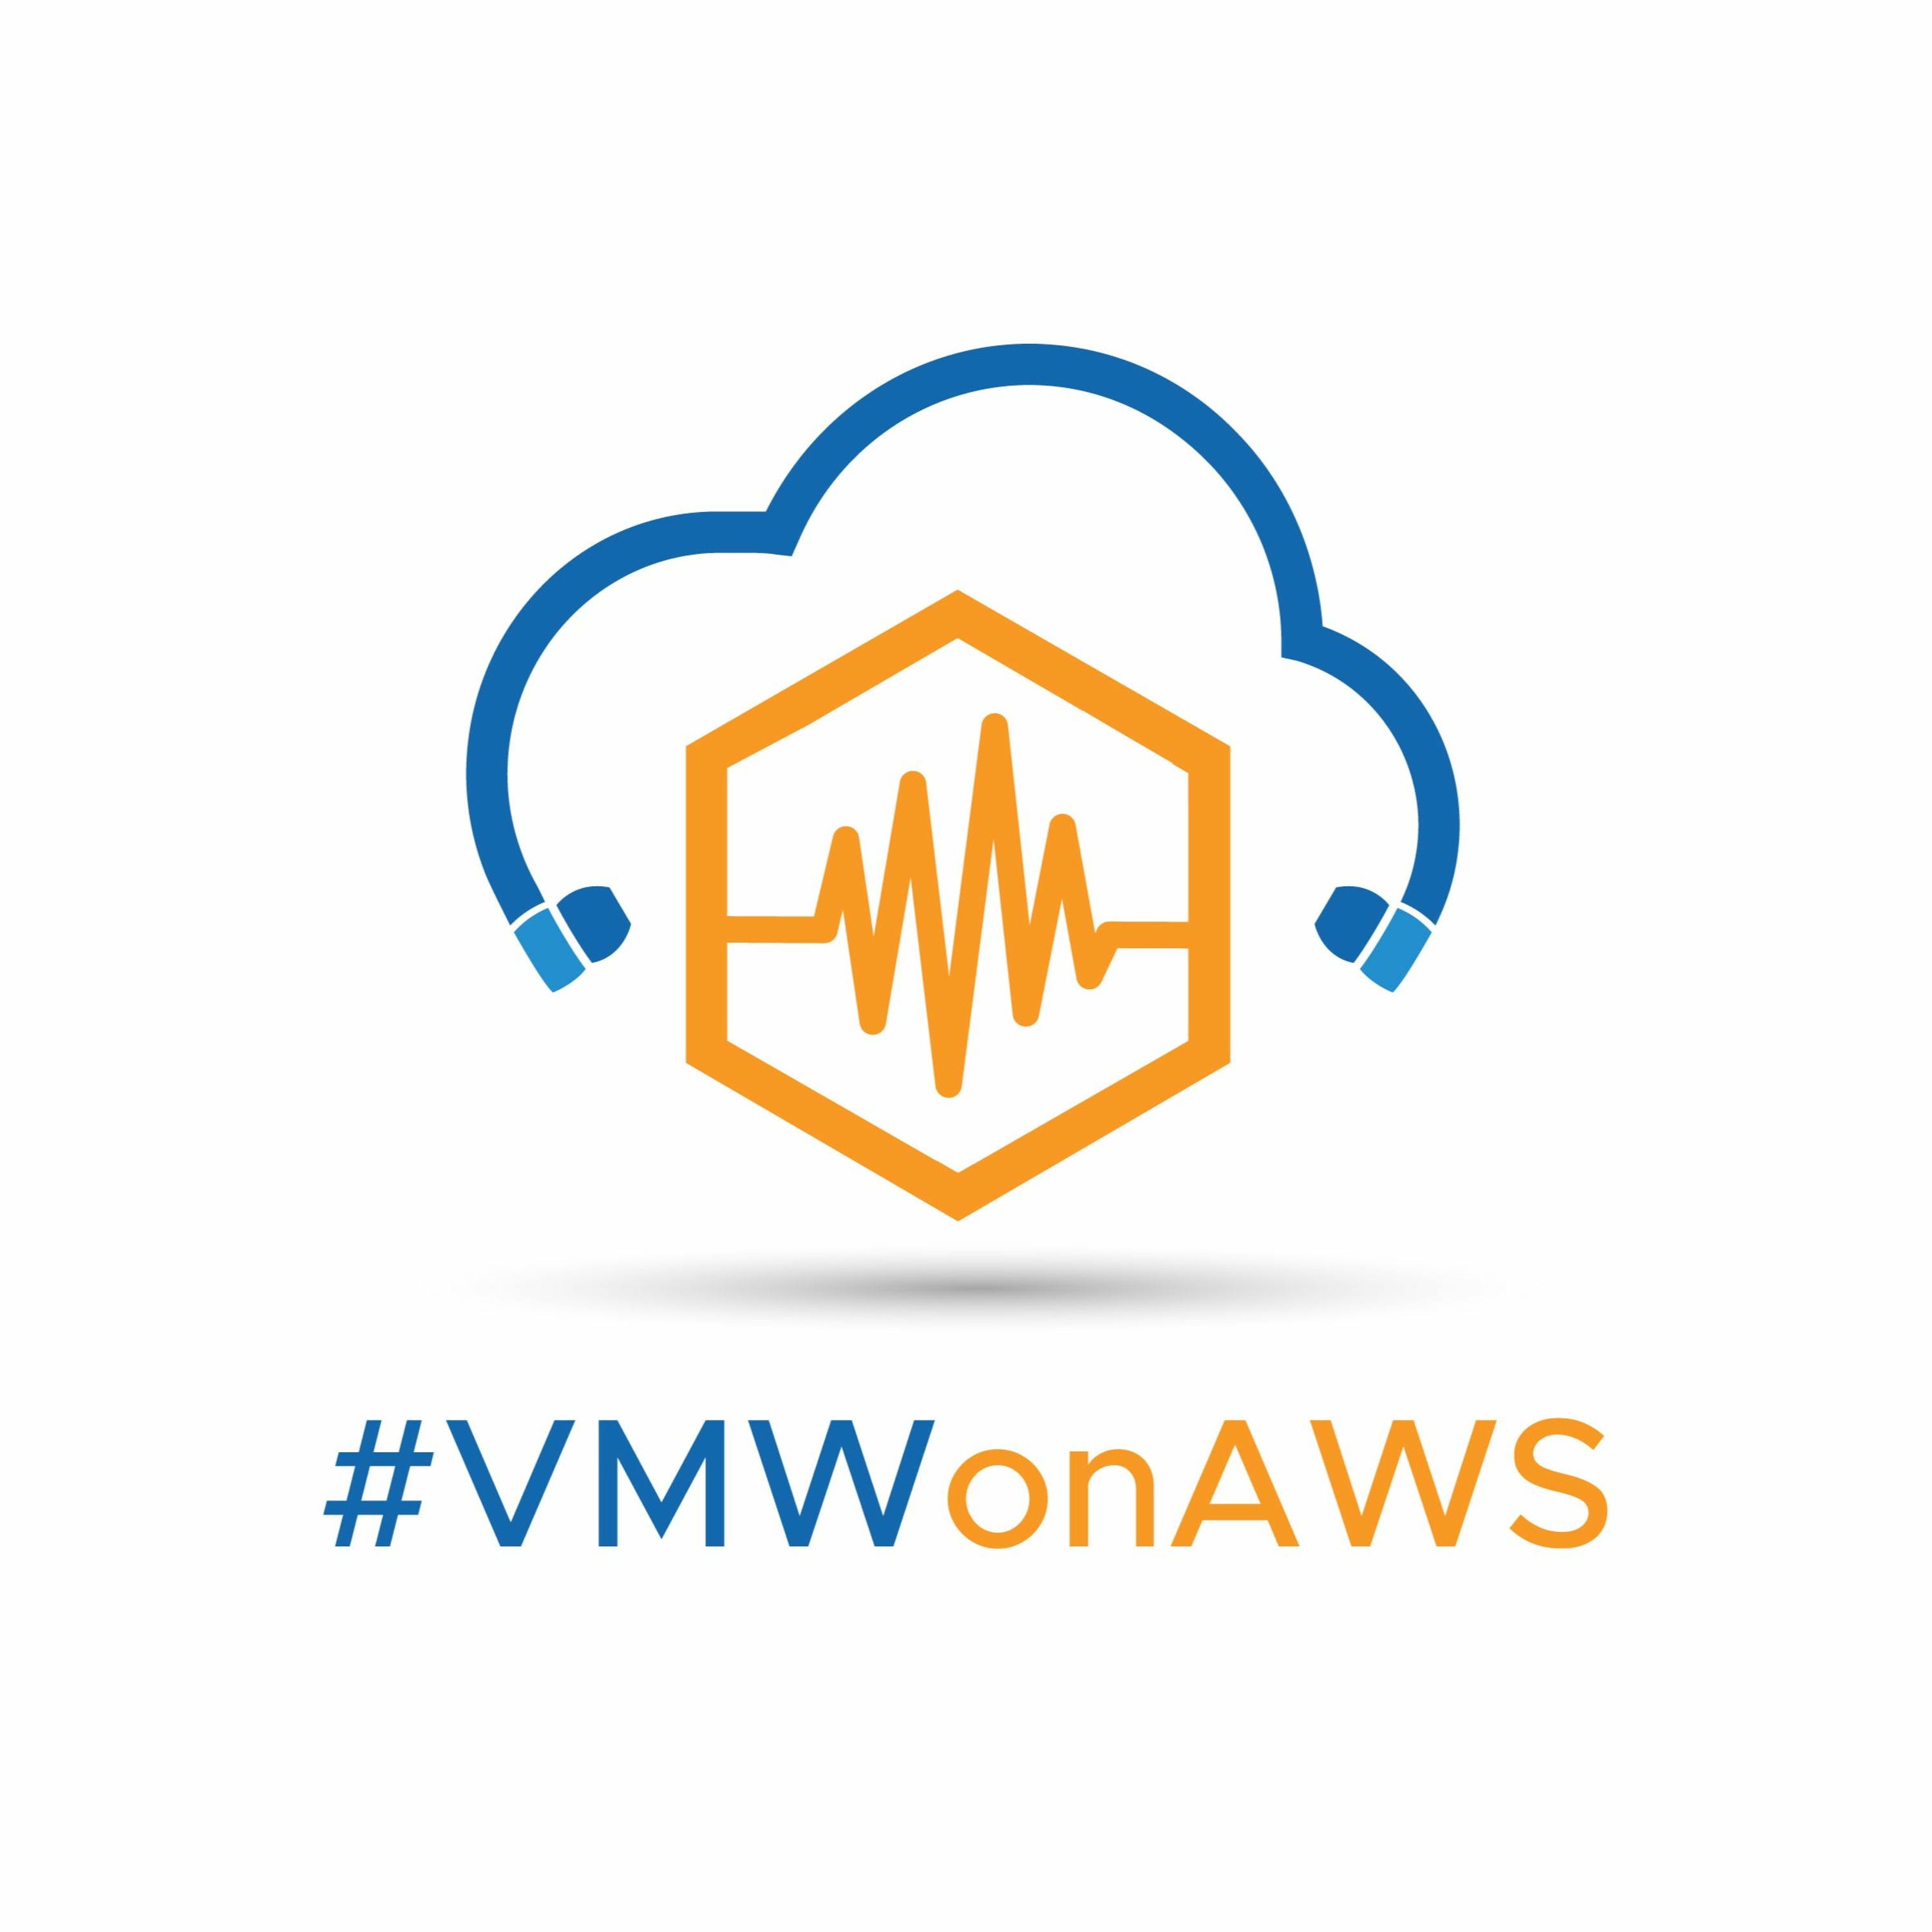 VMware Cloud Universal